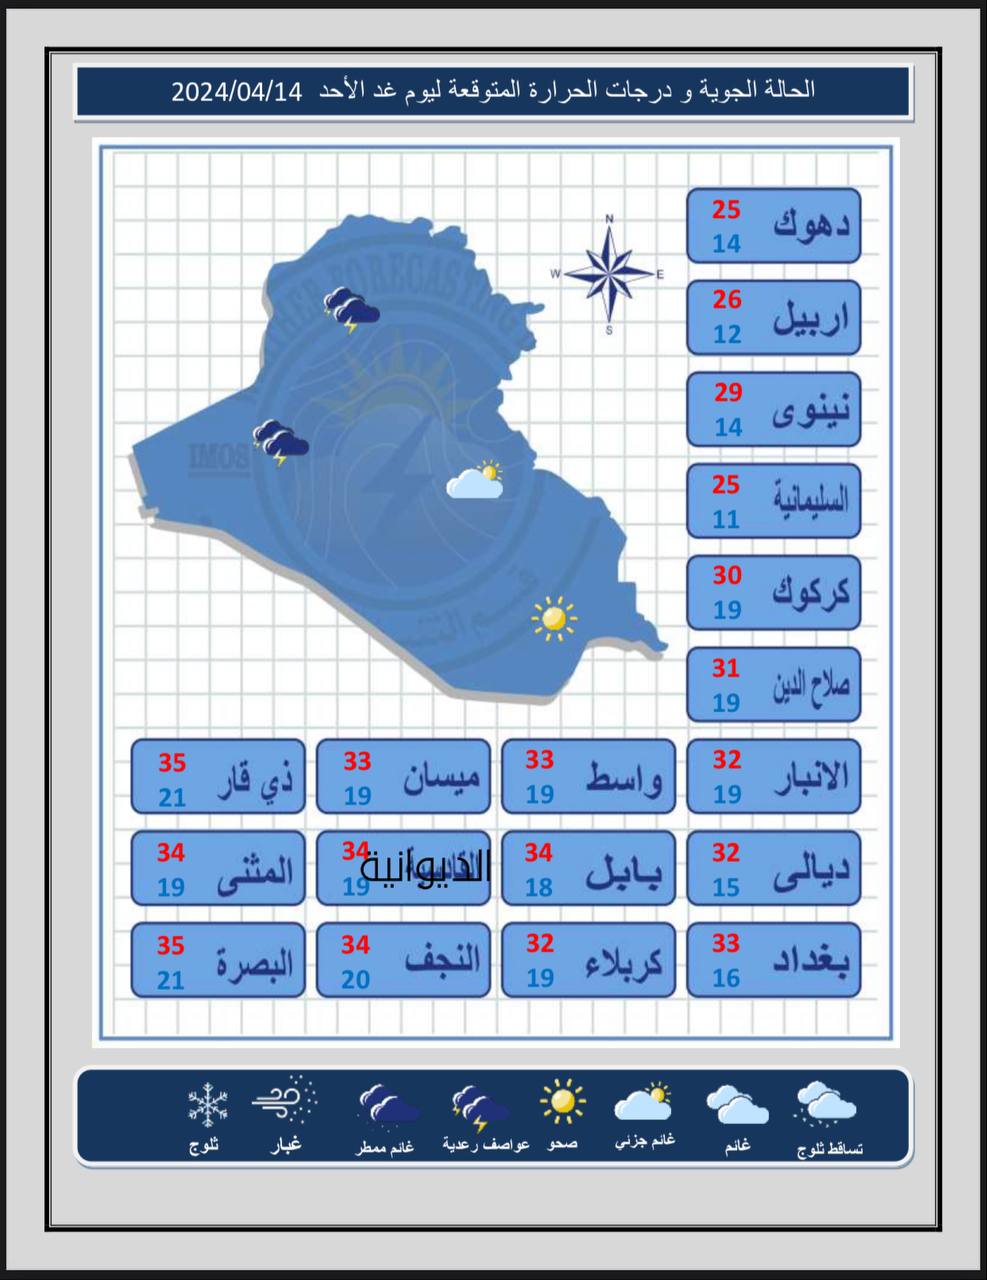 طقس العراق.. أمطار متفرقة وتقلبات في درجات الحرارة خلال الأيام المقبلة